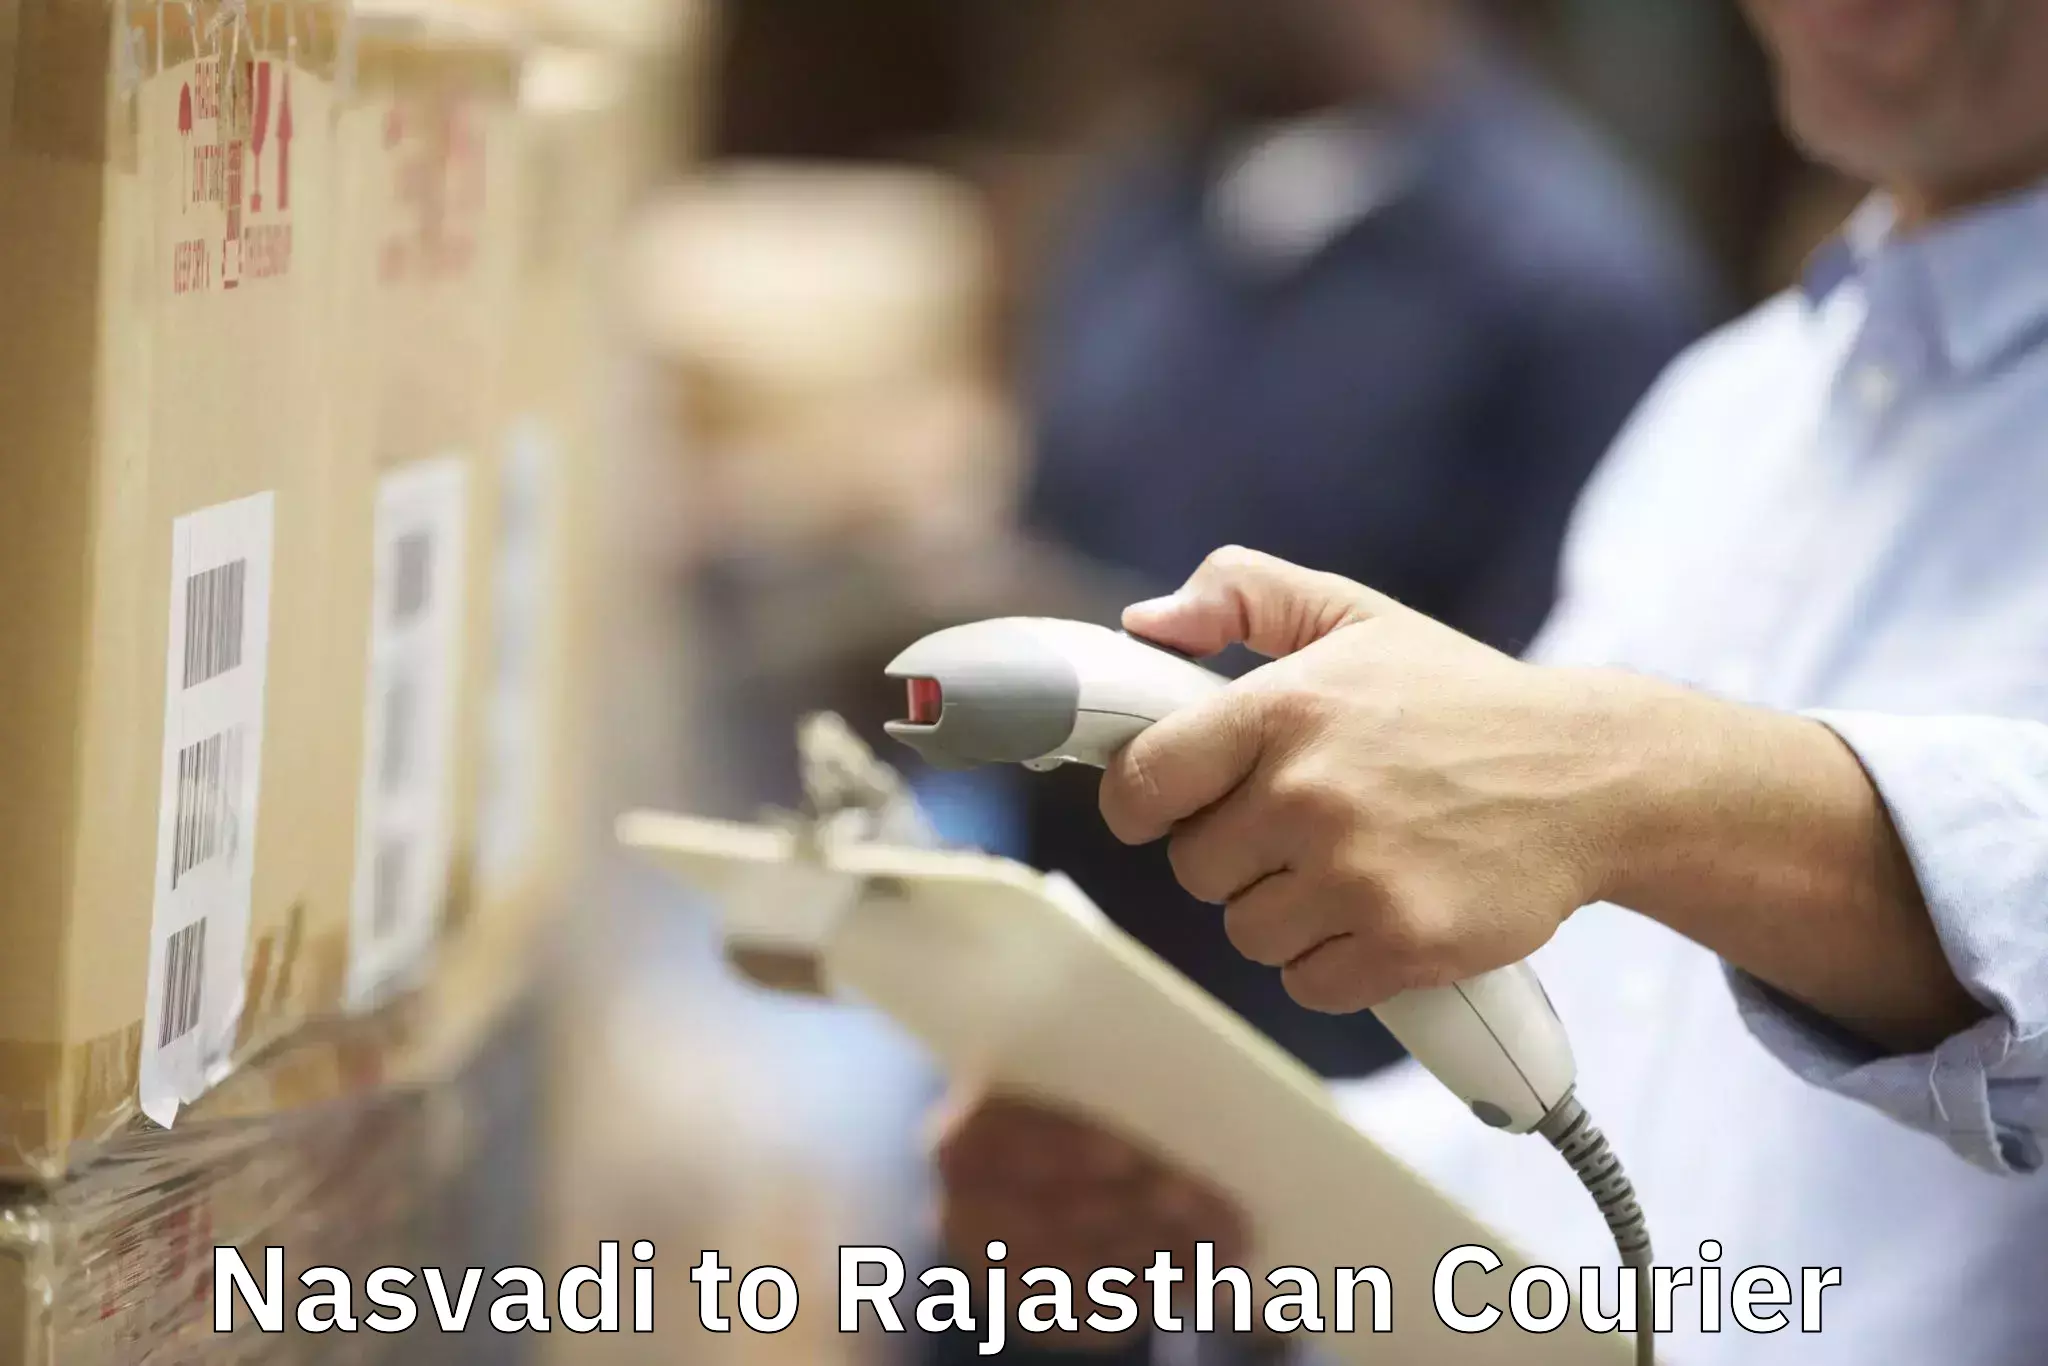 Professional moving company Nasvadi to Viratnagar